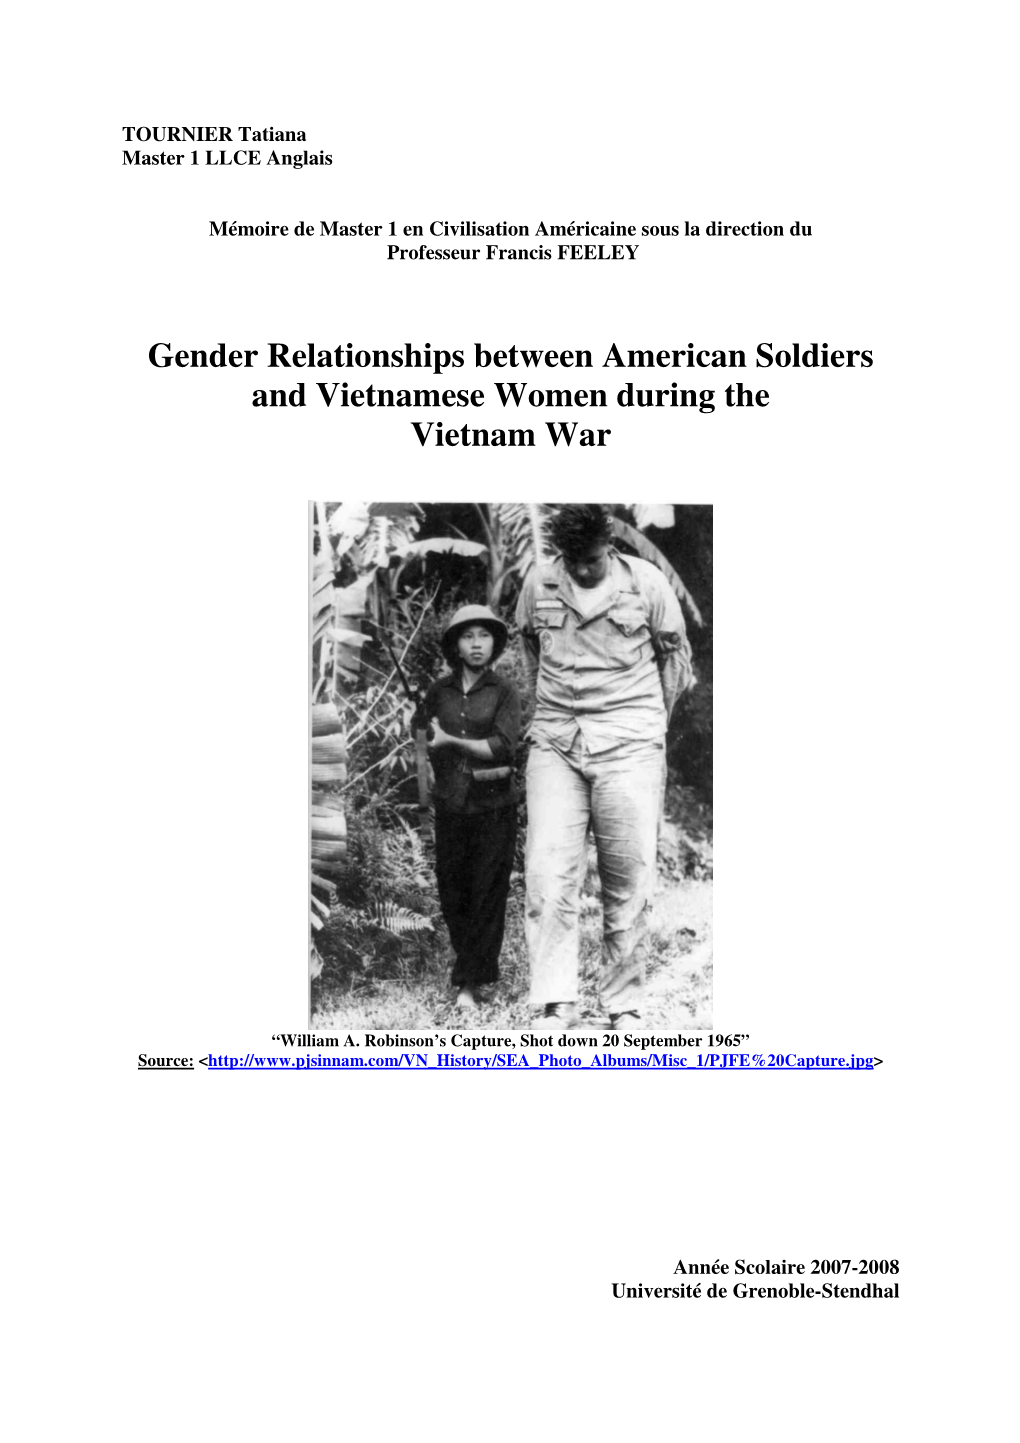 Gender Relationships Between American Soldiers and Vietnamese Women During the Vietnam War